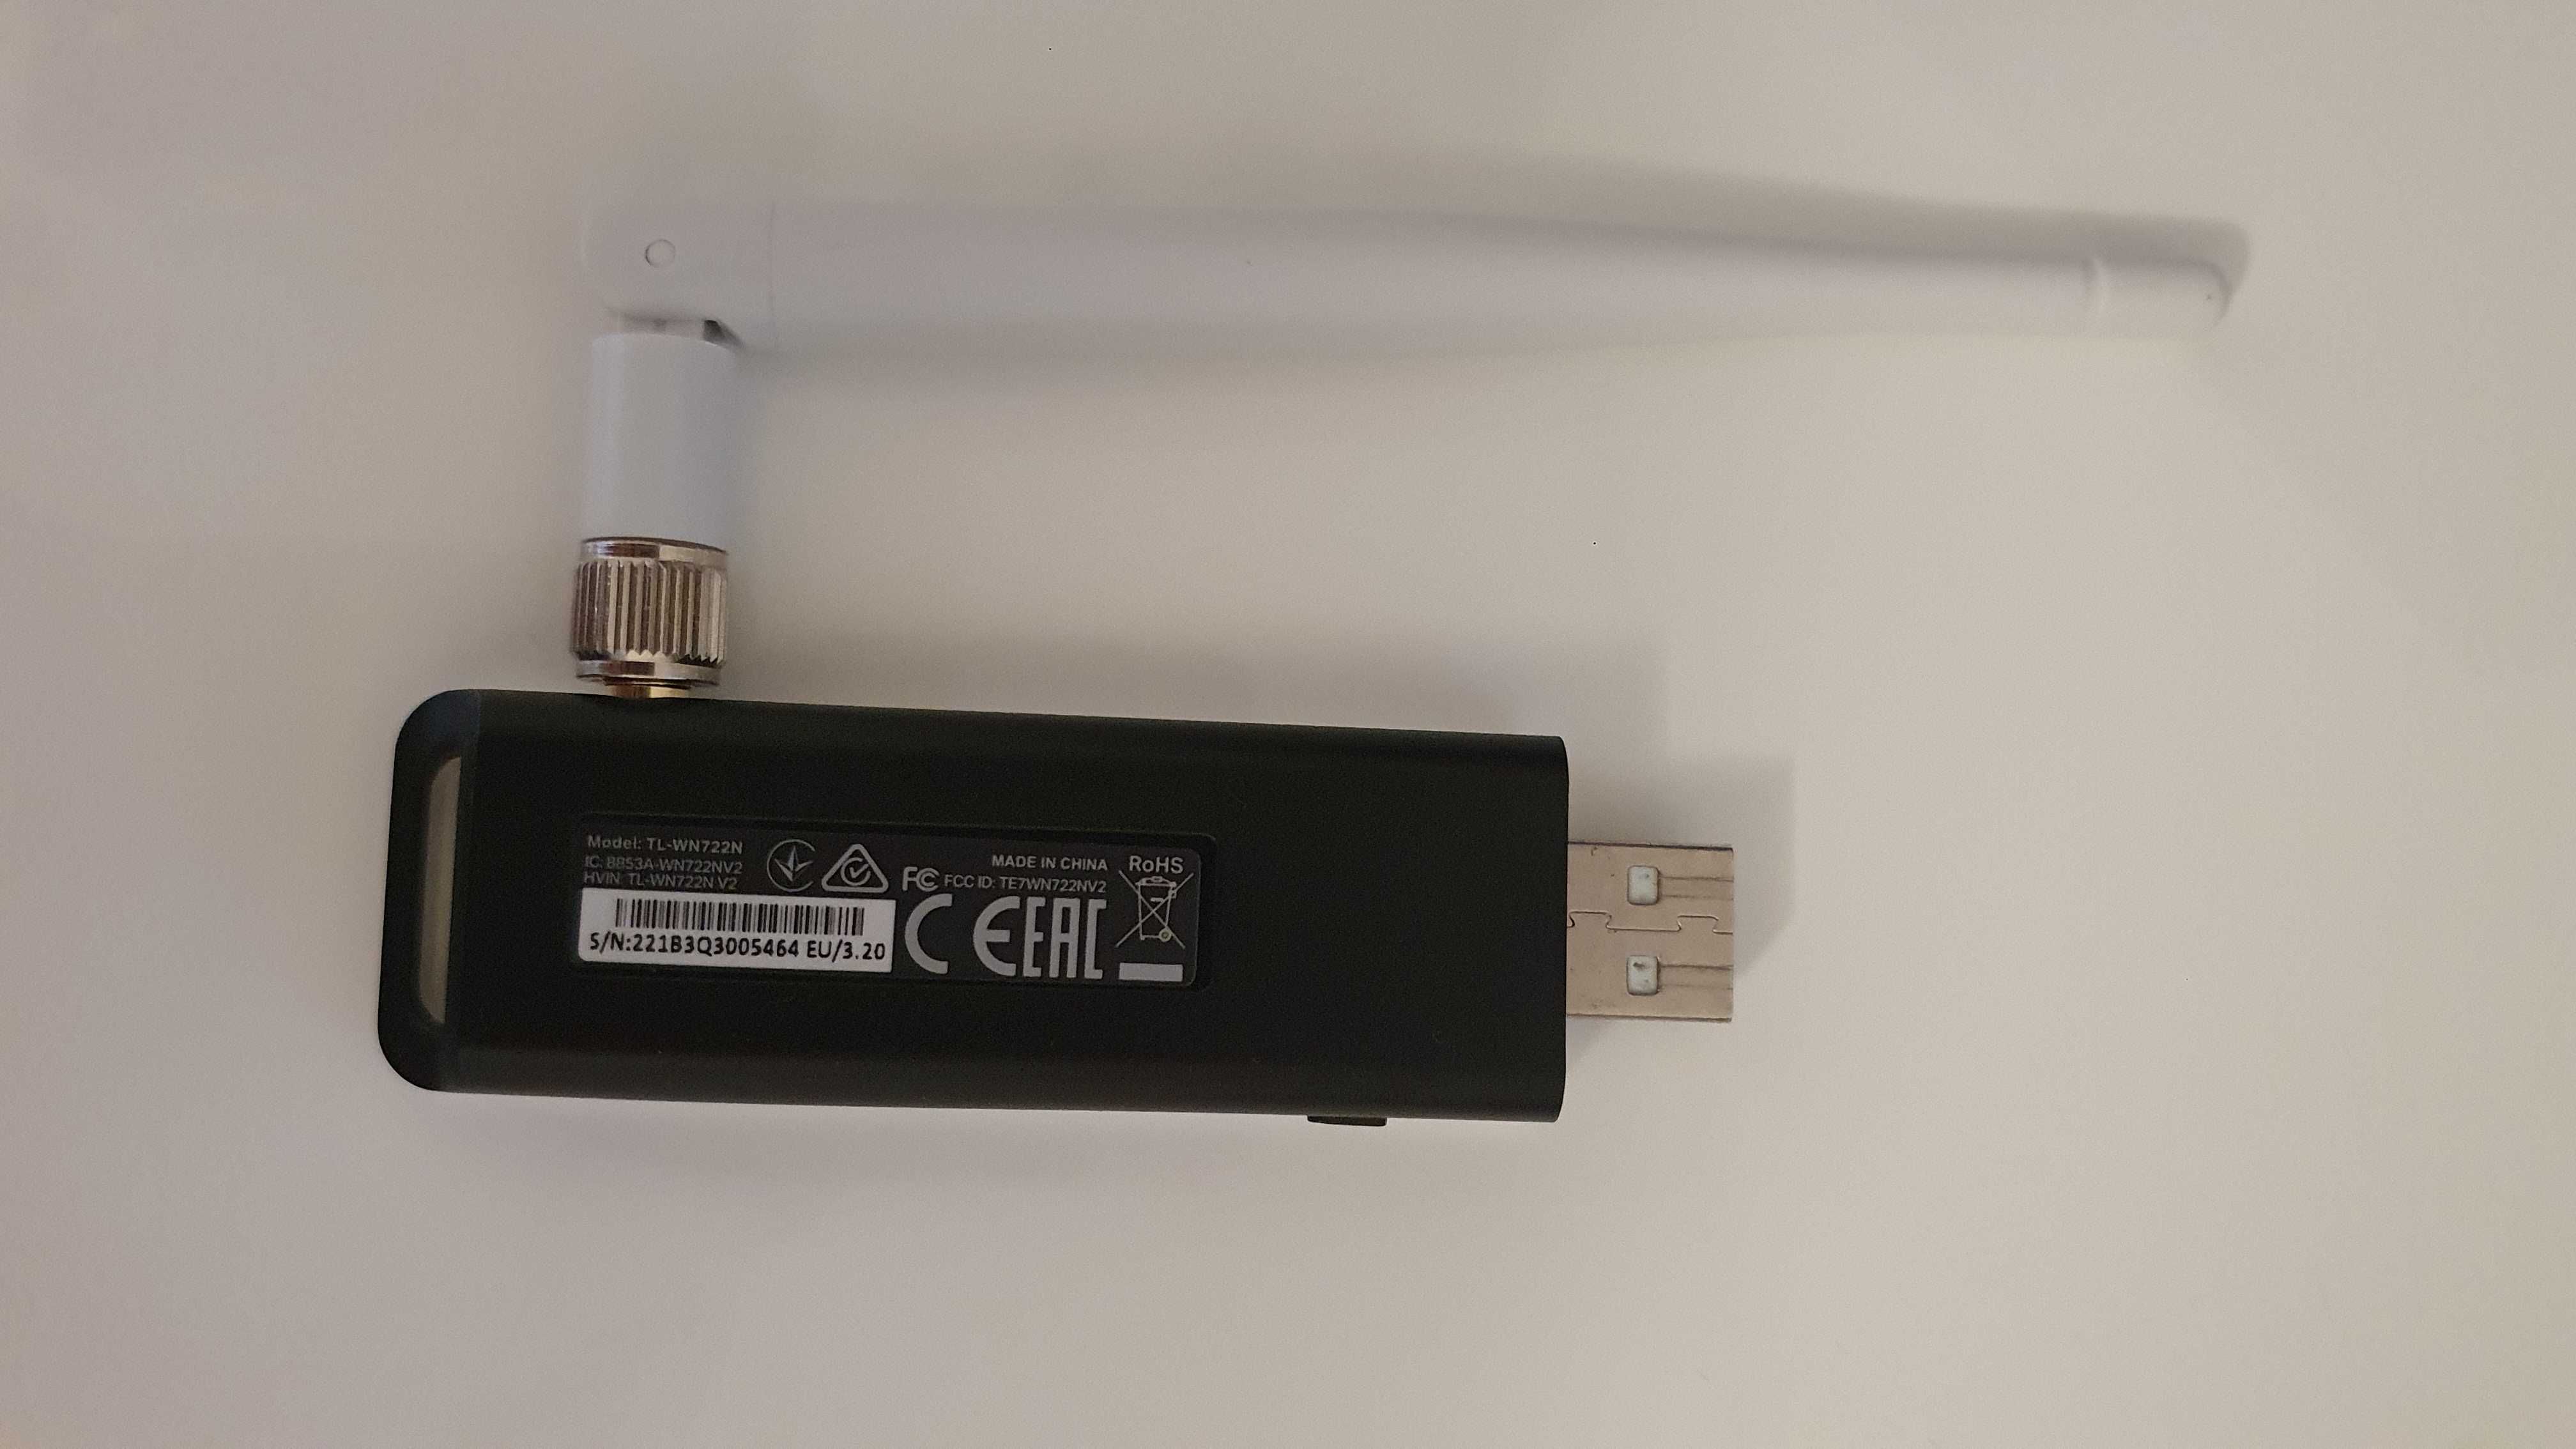 Vand Adaptor wireless TP-LINK TL-WN722N, USB 2.0